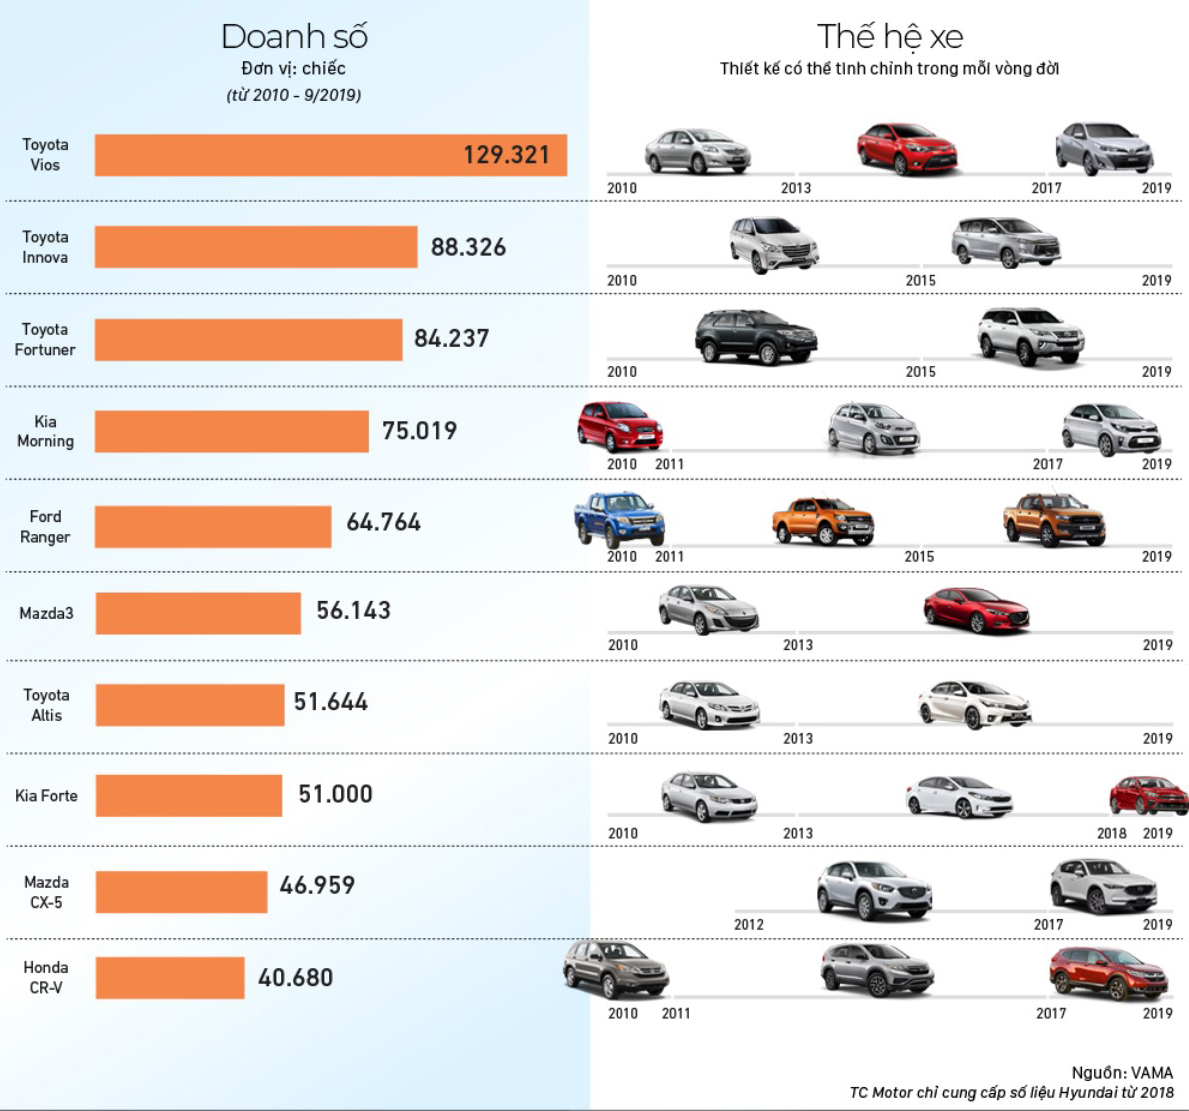 Top 10 chiếc xe ô tô bán chạy nhất thị trường Việt trong 10 năm qua 1z